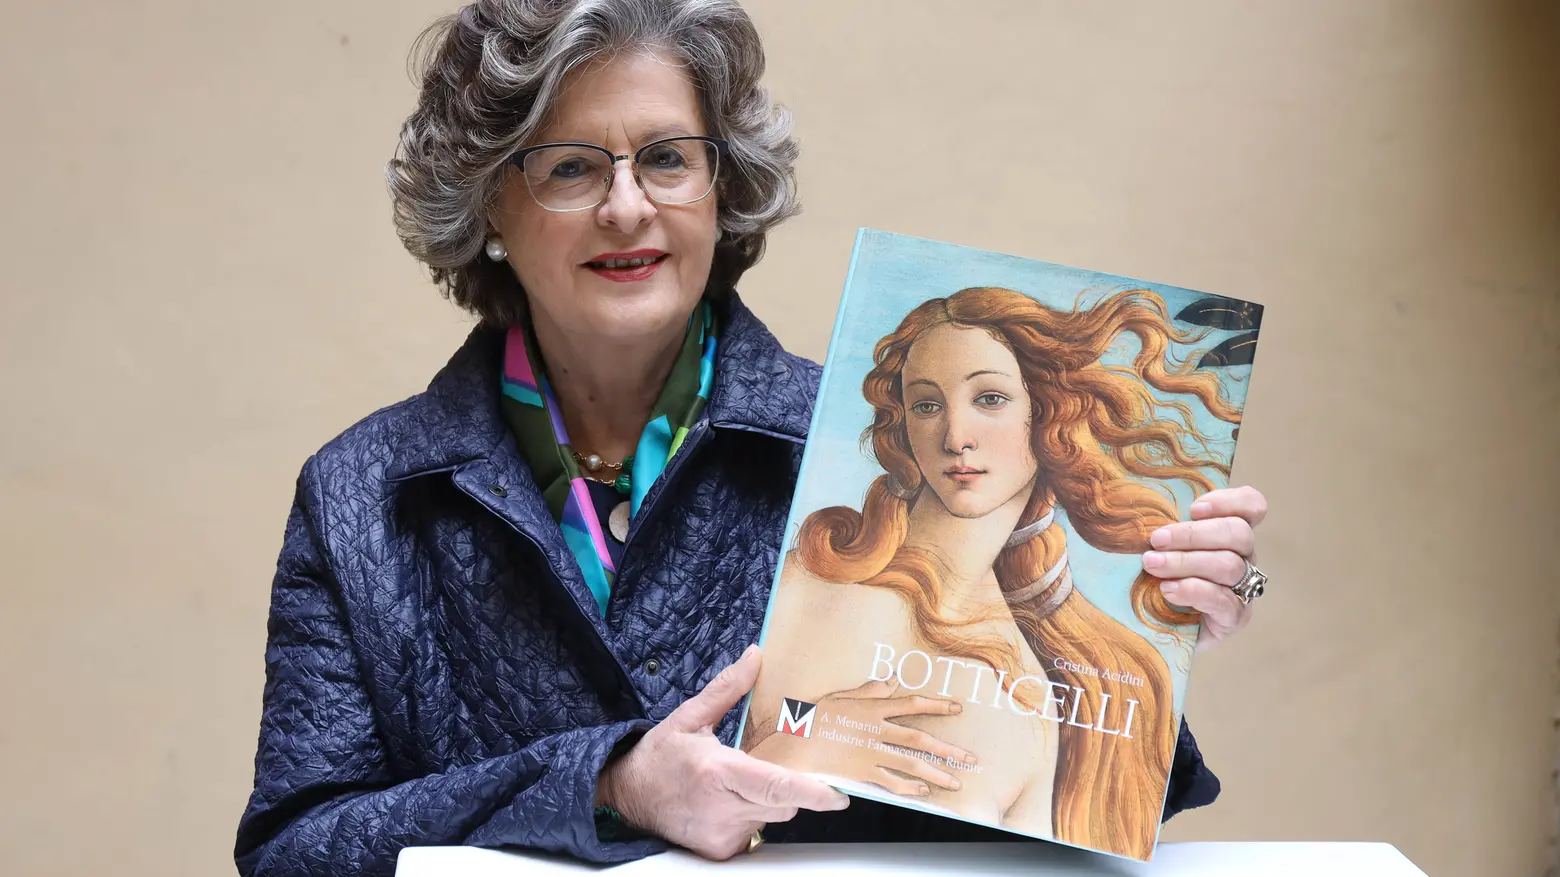 L’autrice, Cristina Acidini e il Volume d'arte Botticelli